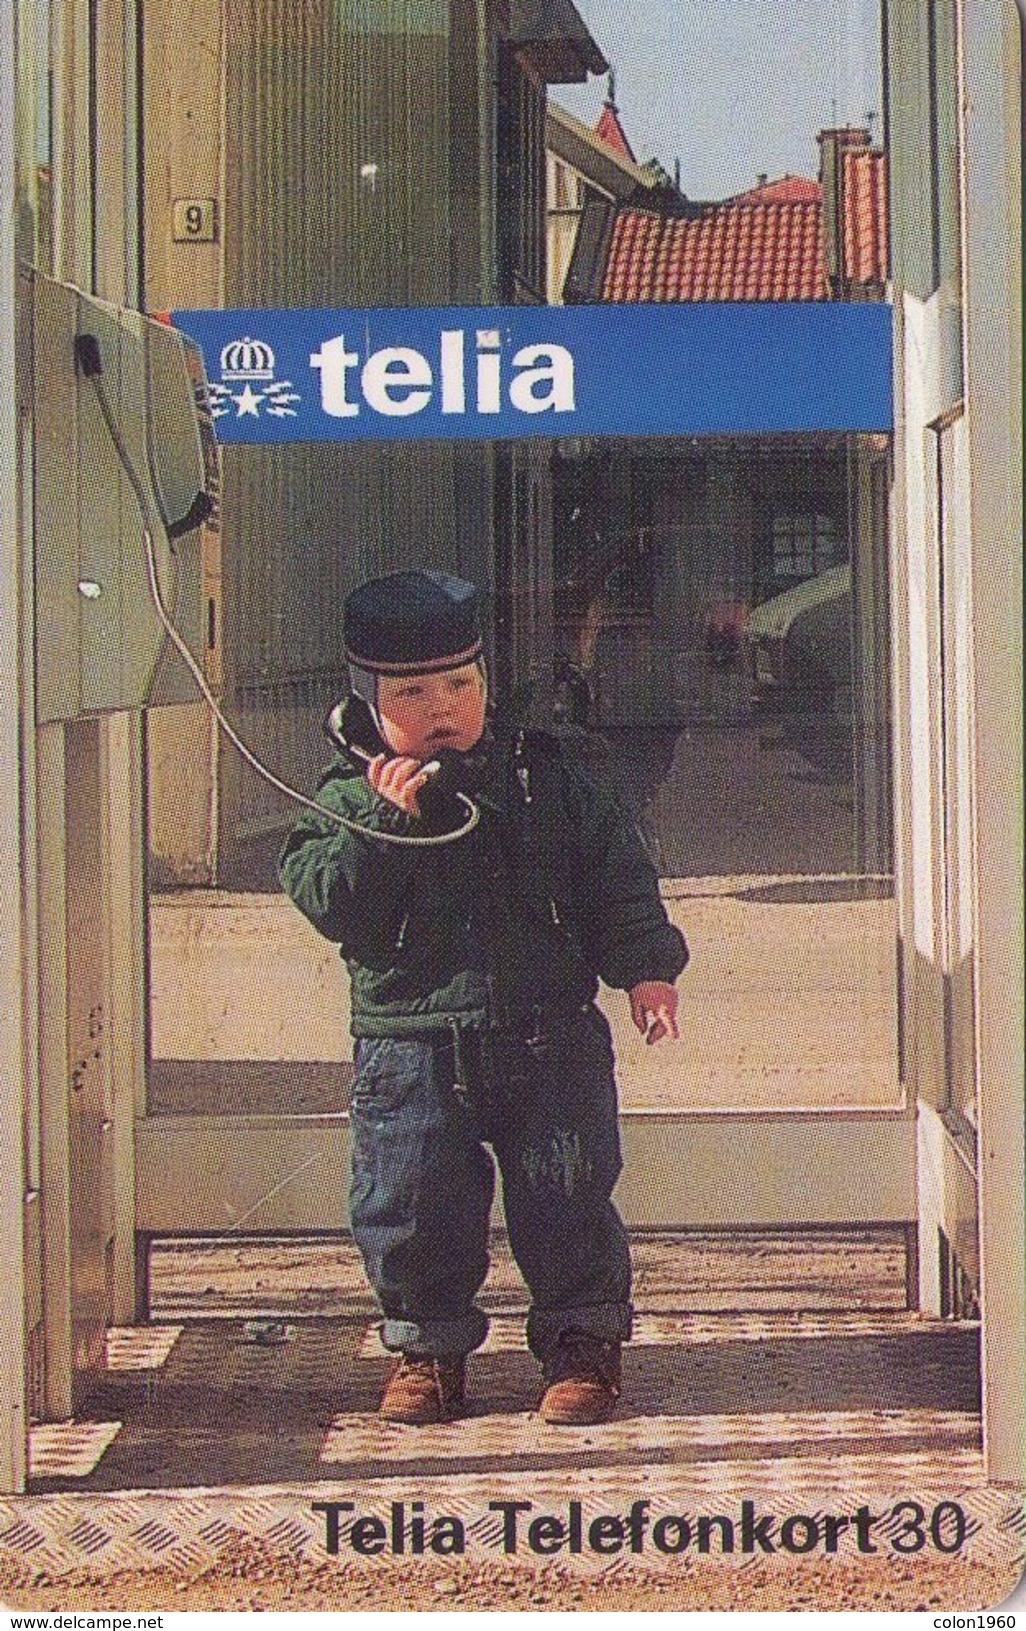 SUECIA. SE-TEL-030-0105. Baby In A Phone Booth. 1995-11. (510) - Suecia